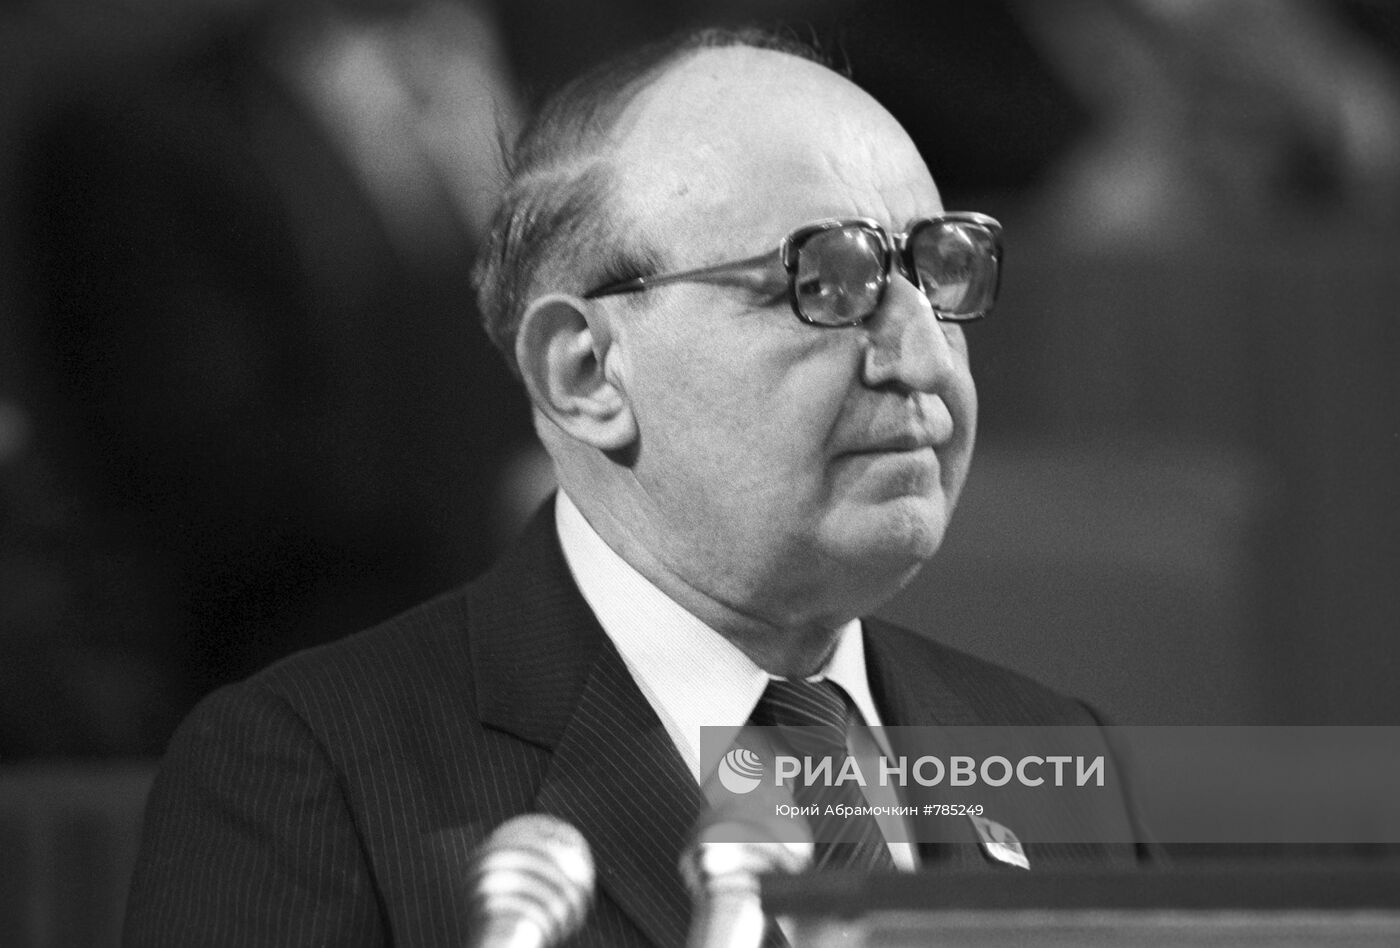 Тодор Живков во время выступления